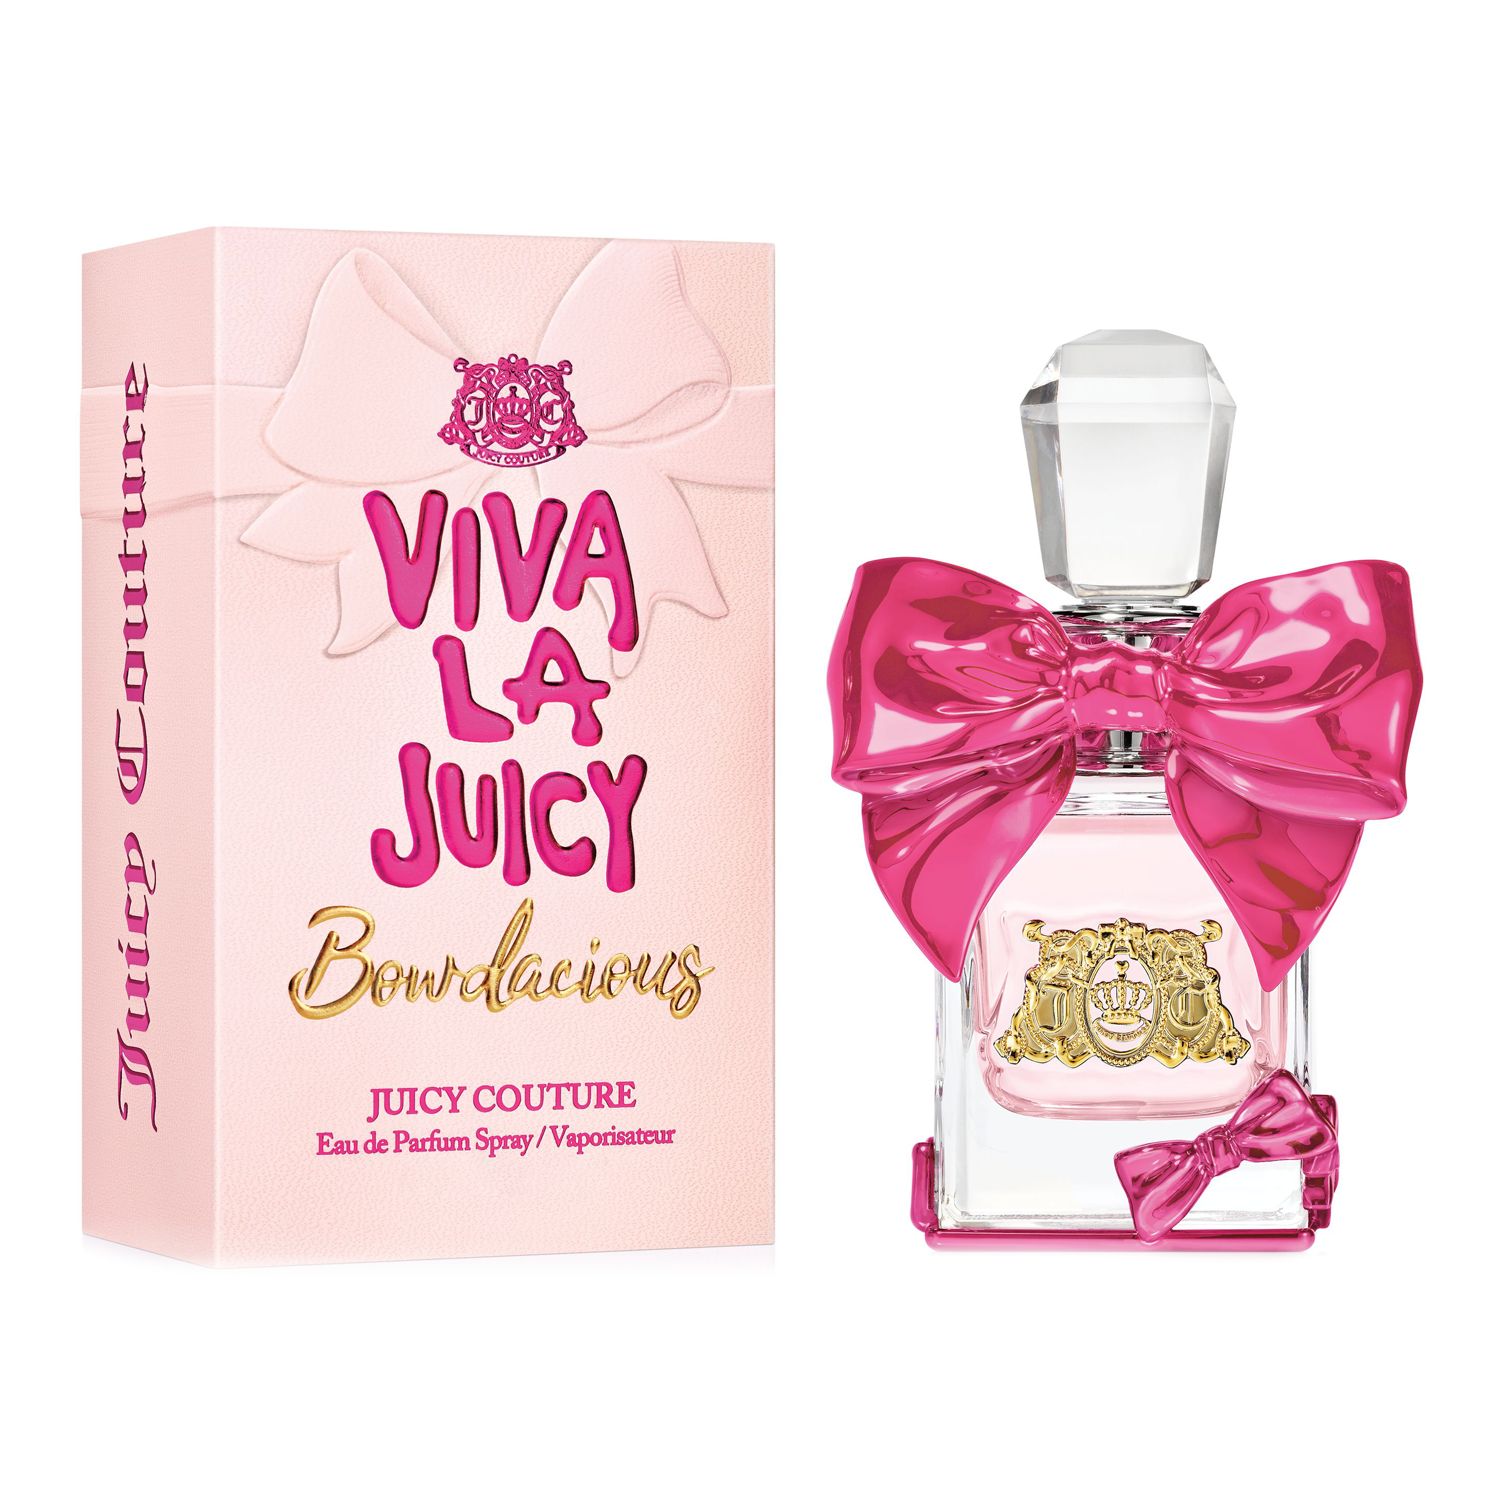 Juicy Couture Viva La Juicy Bowdacious 